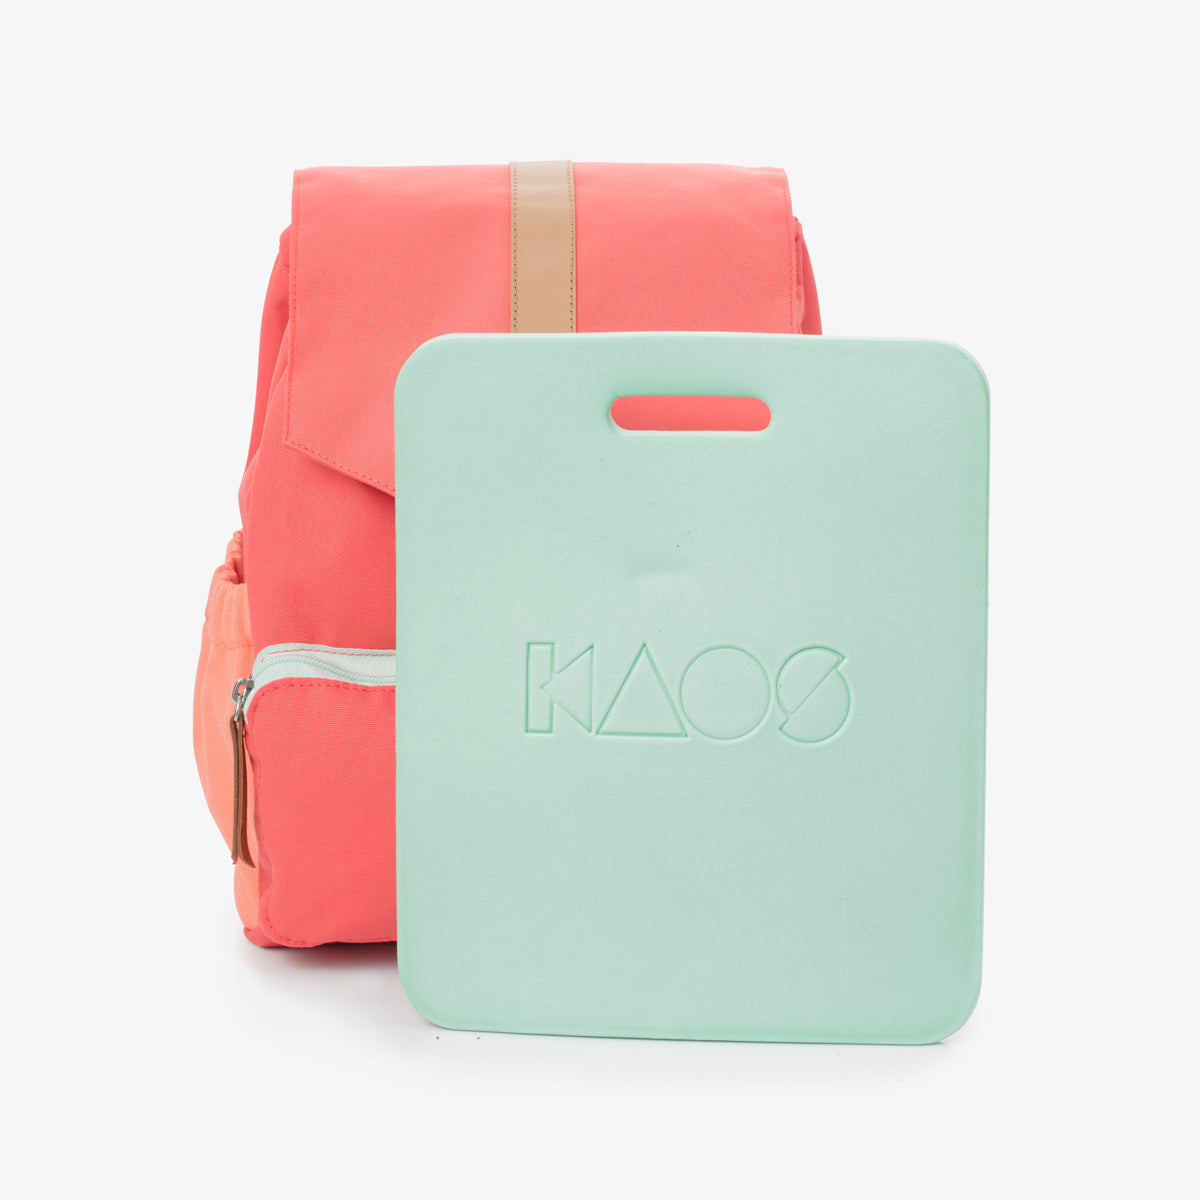 Peach Mini Ransel Kids Backpack